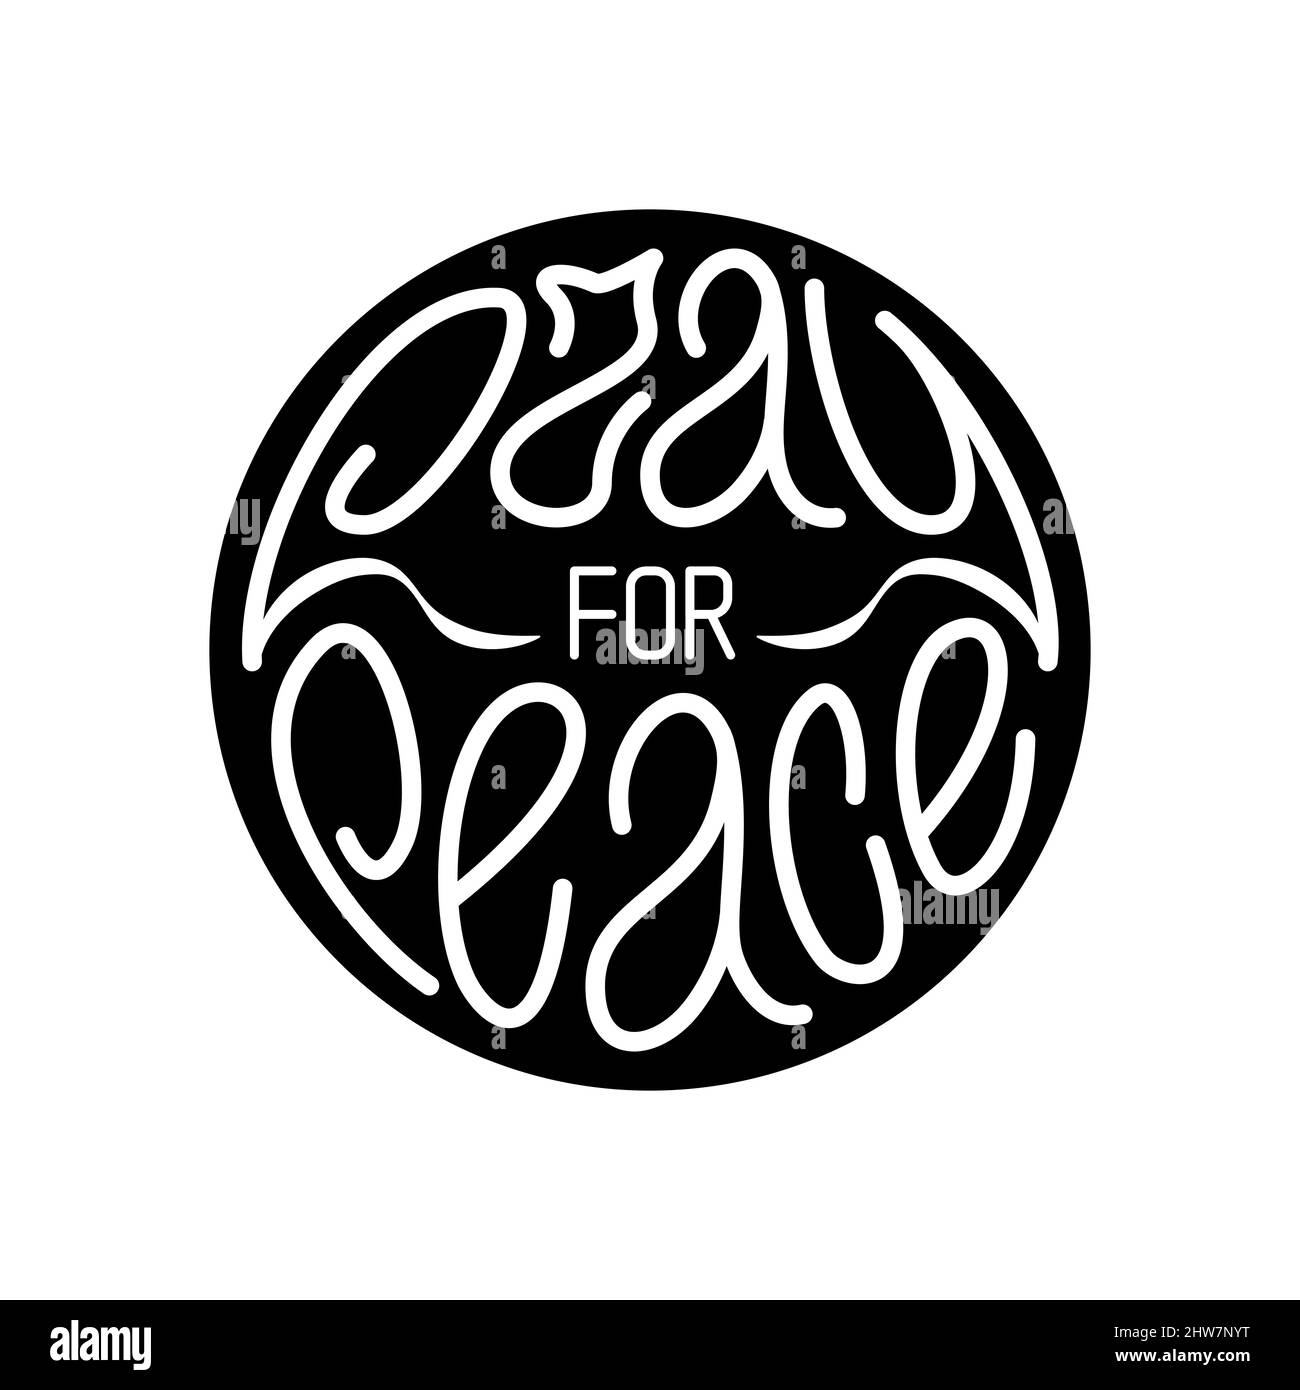 Betet für den Frieden. Handgezeichnete weiße Schriftzüge passen in einen schwarzen Kreis, eine Antikriegskundgebung, friedliche Bewegung. Vektorgrafik Stock Vektor